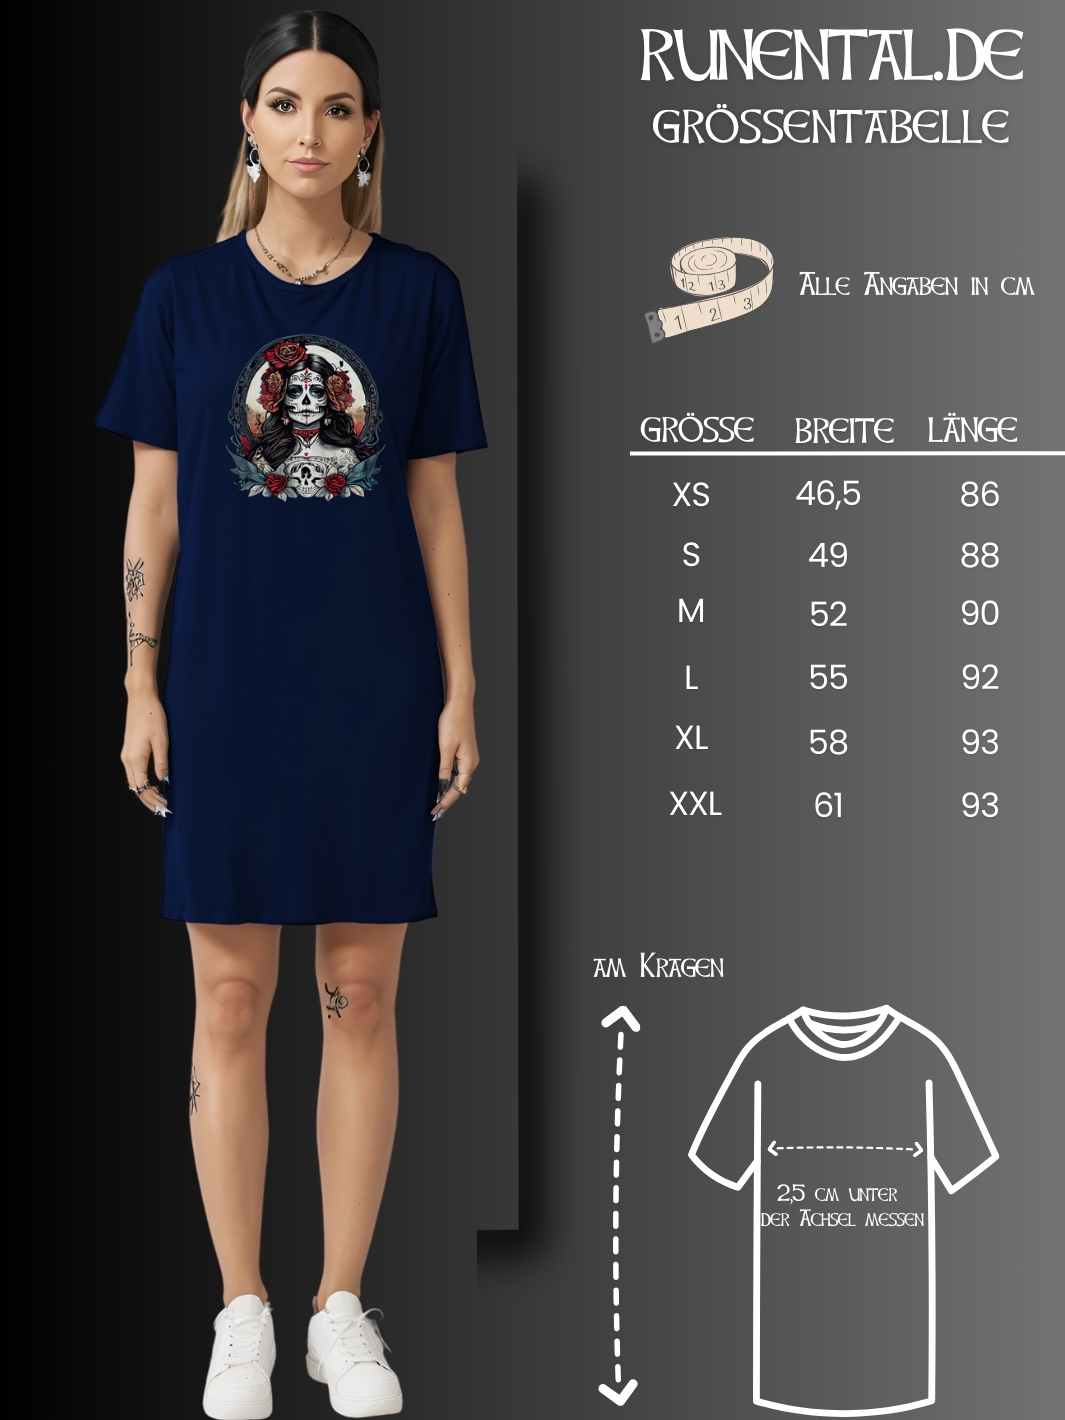 Größentabelle für das La Catrina Organic T-Shirt Kleid – Runental.de